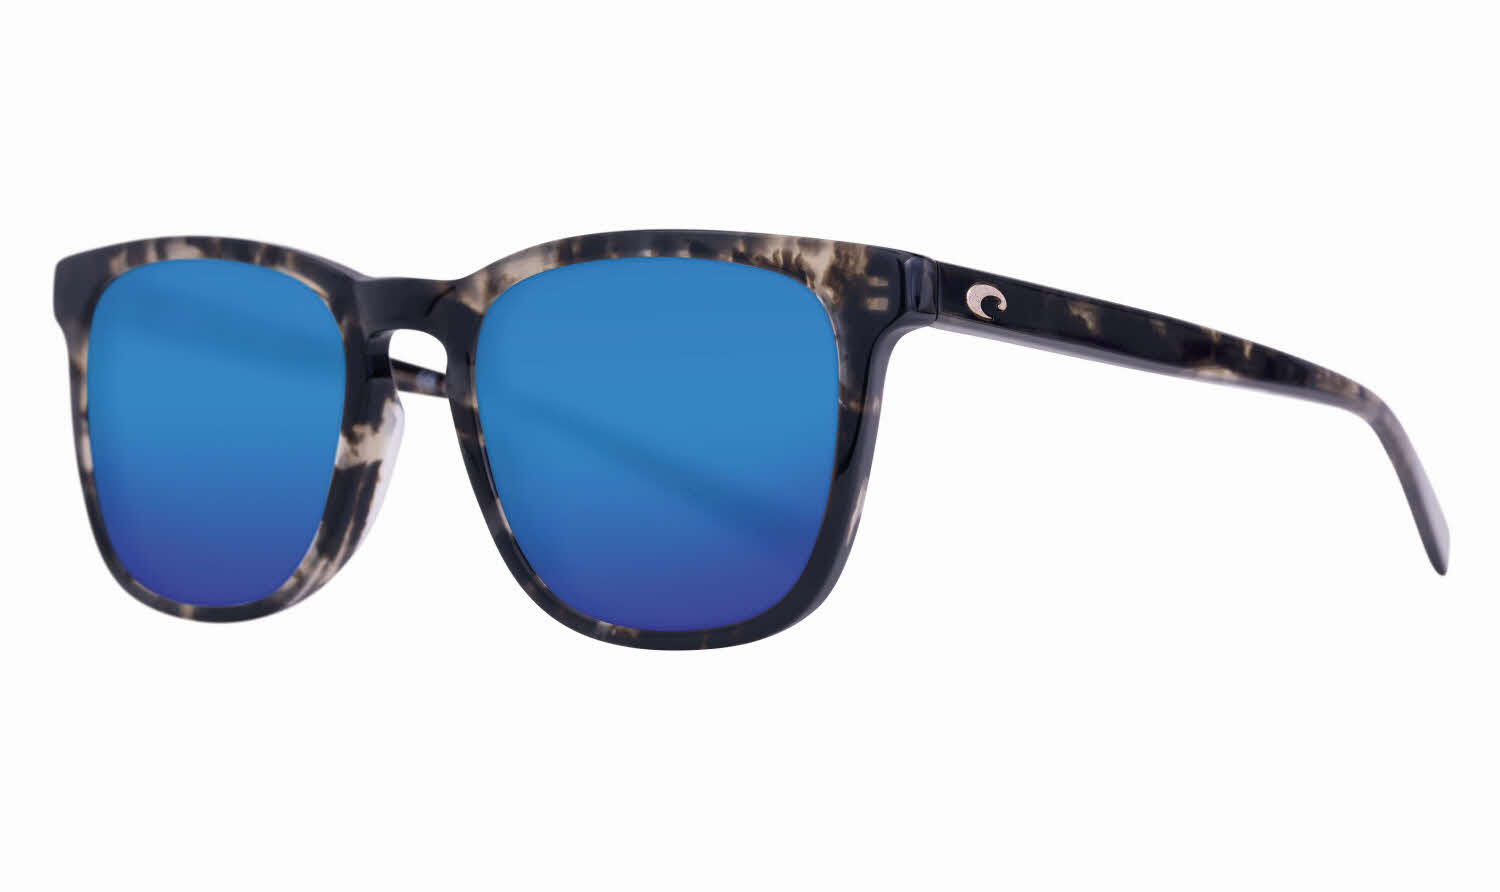 Costa Sullivan - Del Mar Collection Sunglasses In Black